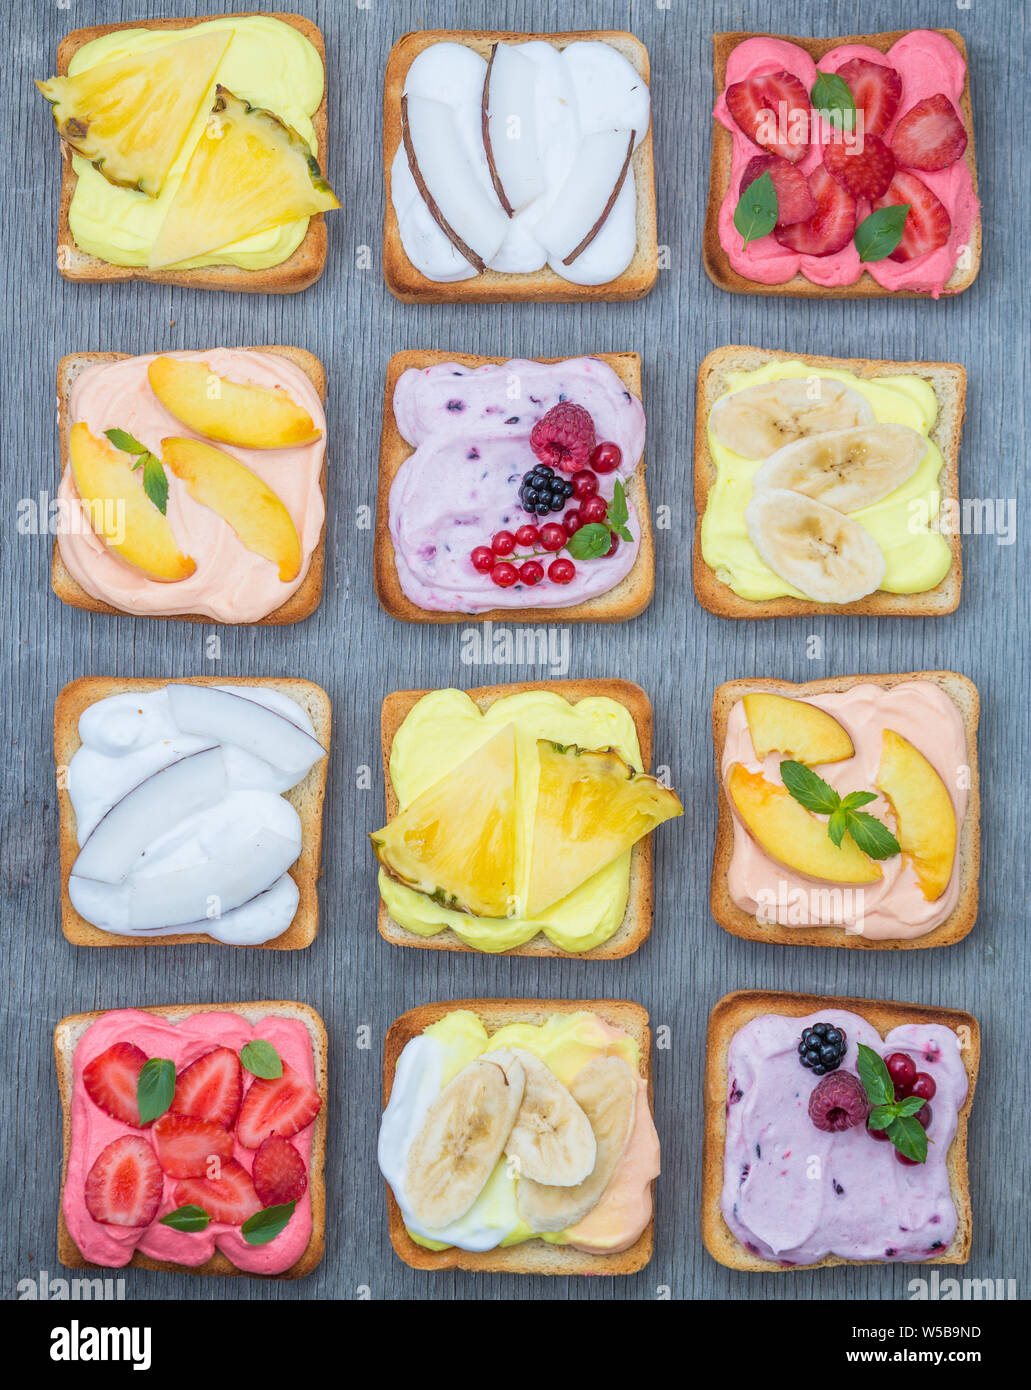 Un assortiment de toasts avec fruits et de baies sur wipped crème sur une planche de bois sur un fond clair. Dessert maison traditionnelle d'été. Banque D'Images